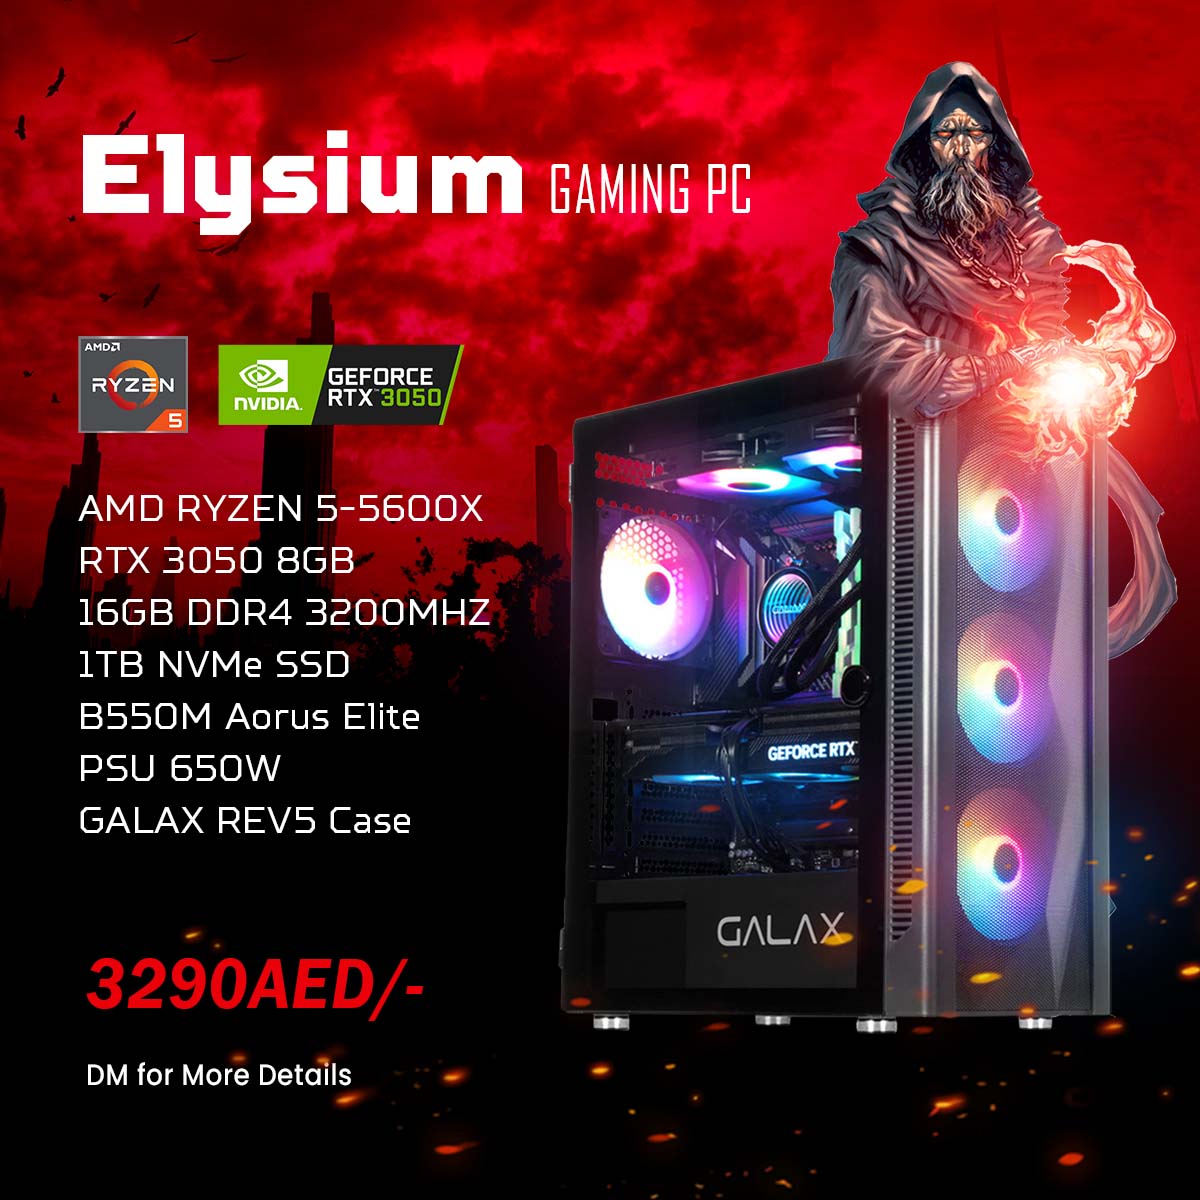 Elysium Gaming PC AMD Ryzen 5 5600X, RTX 3050 8GB, 16GB RAM, 1TB SSD, Windows 10, RGB Case